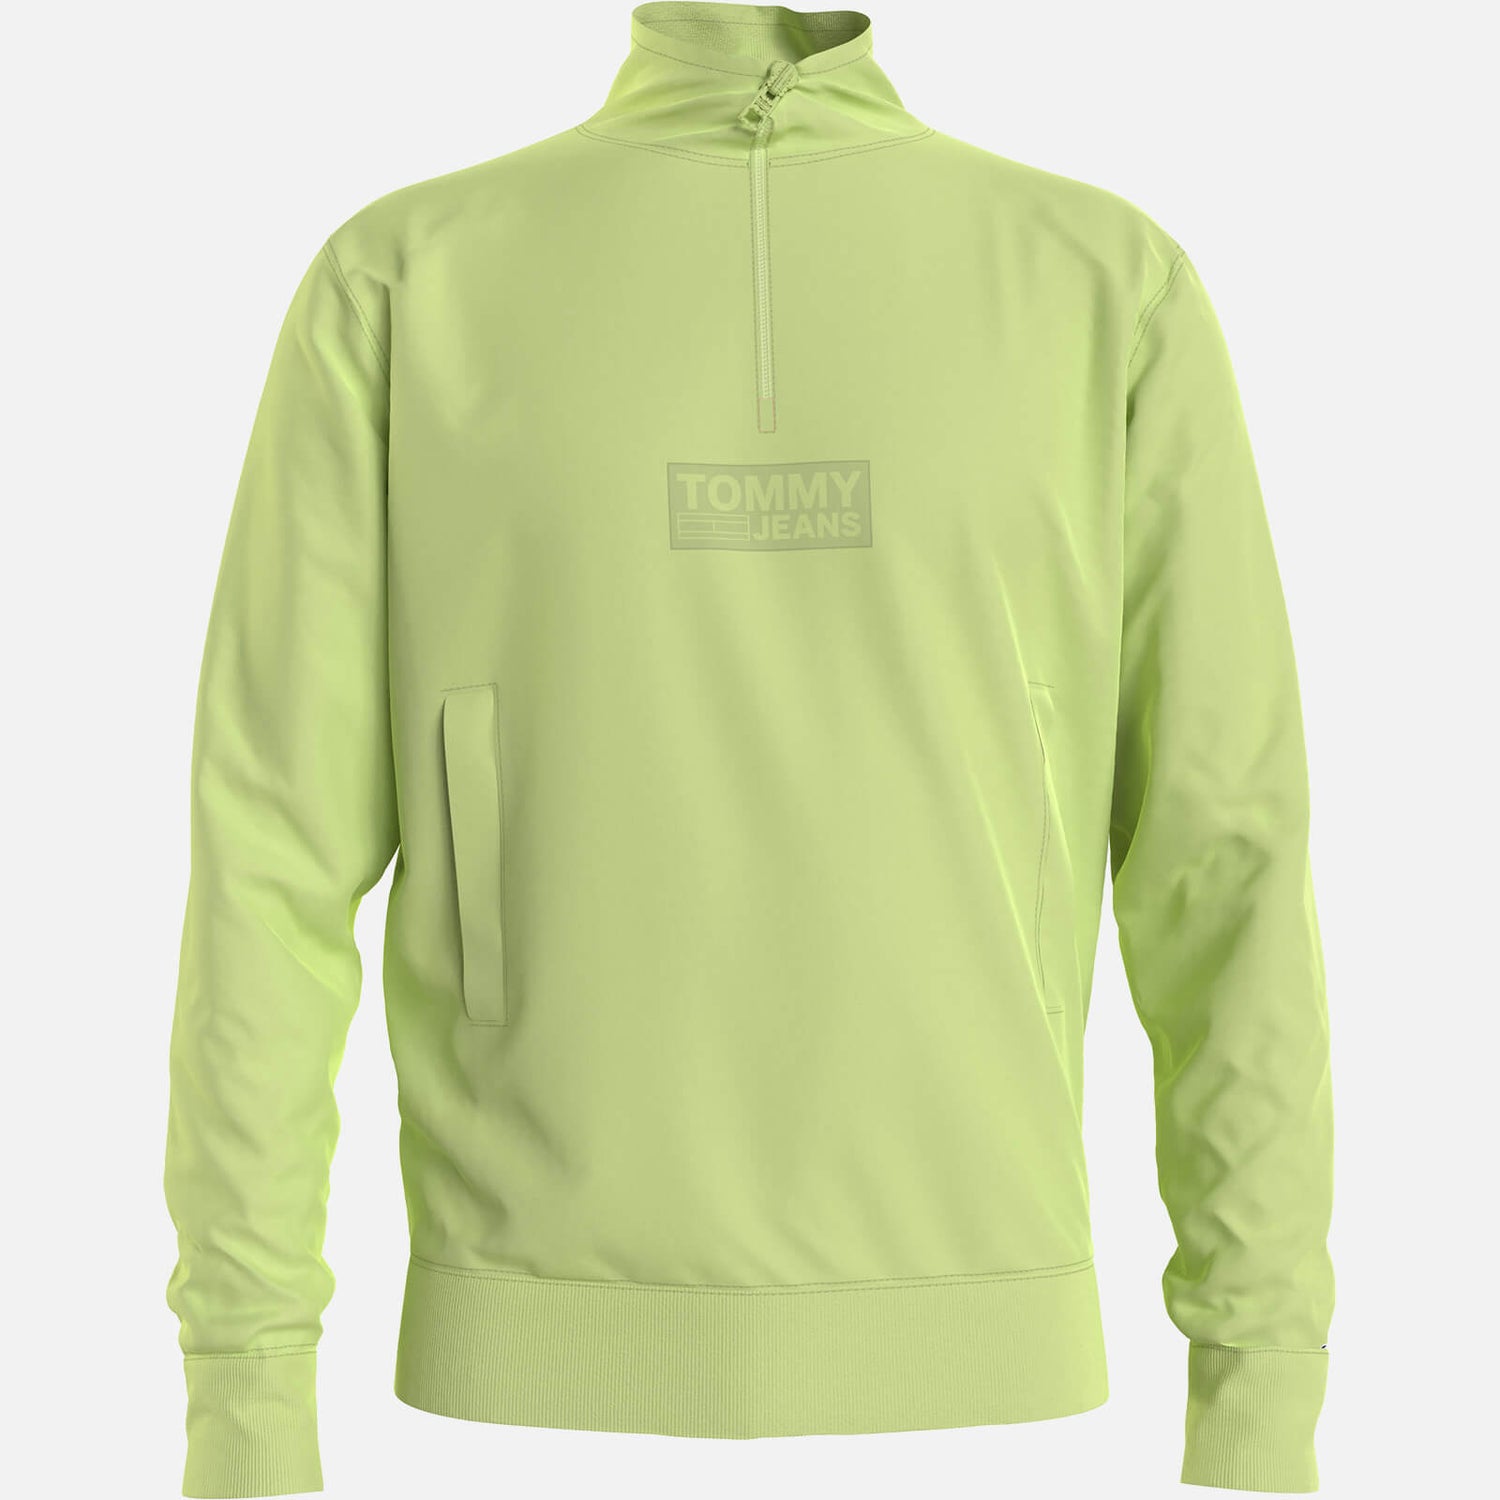 Tommy Jeans Men's Tonal Corporation Logo Zip Mock Neck Sweatshirt - Faded Lime